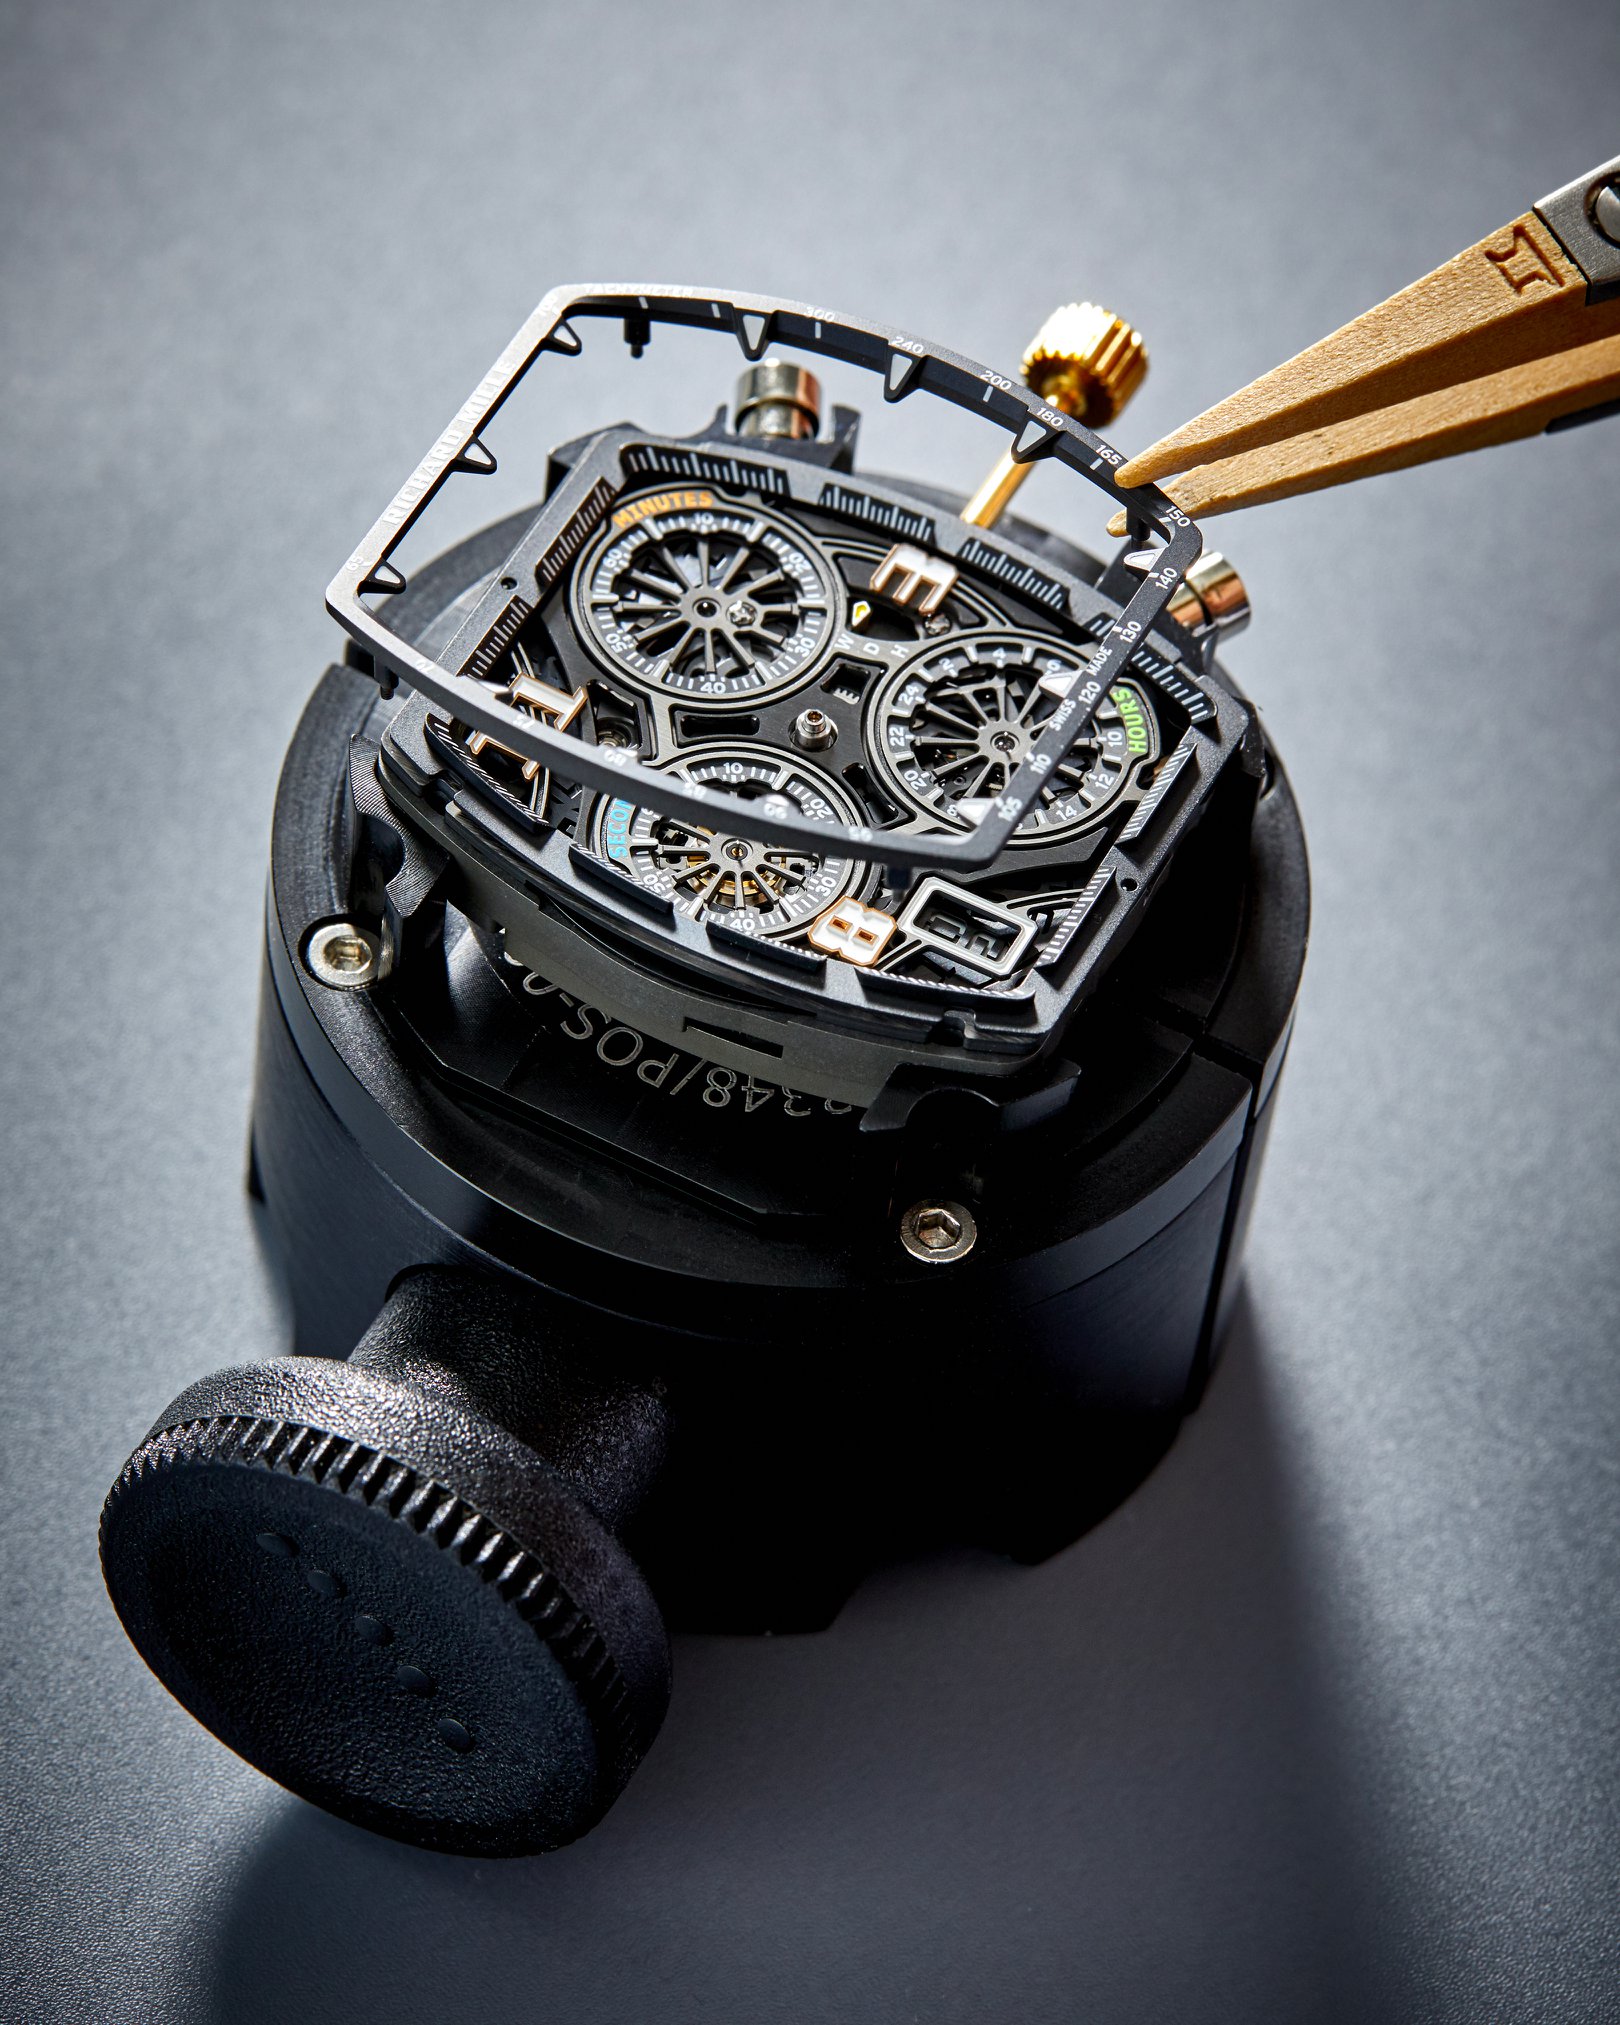 Những chi tiết tinh xảo trong chiếc đồng hồ của thương hiệu Richard Mille